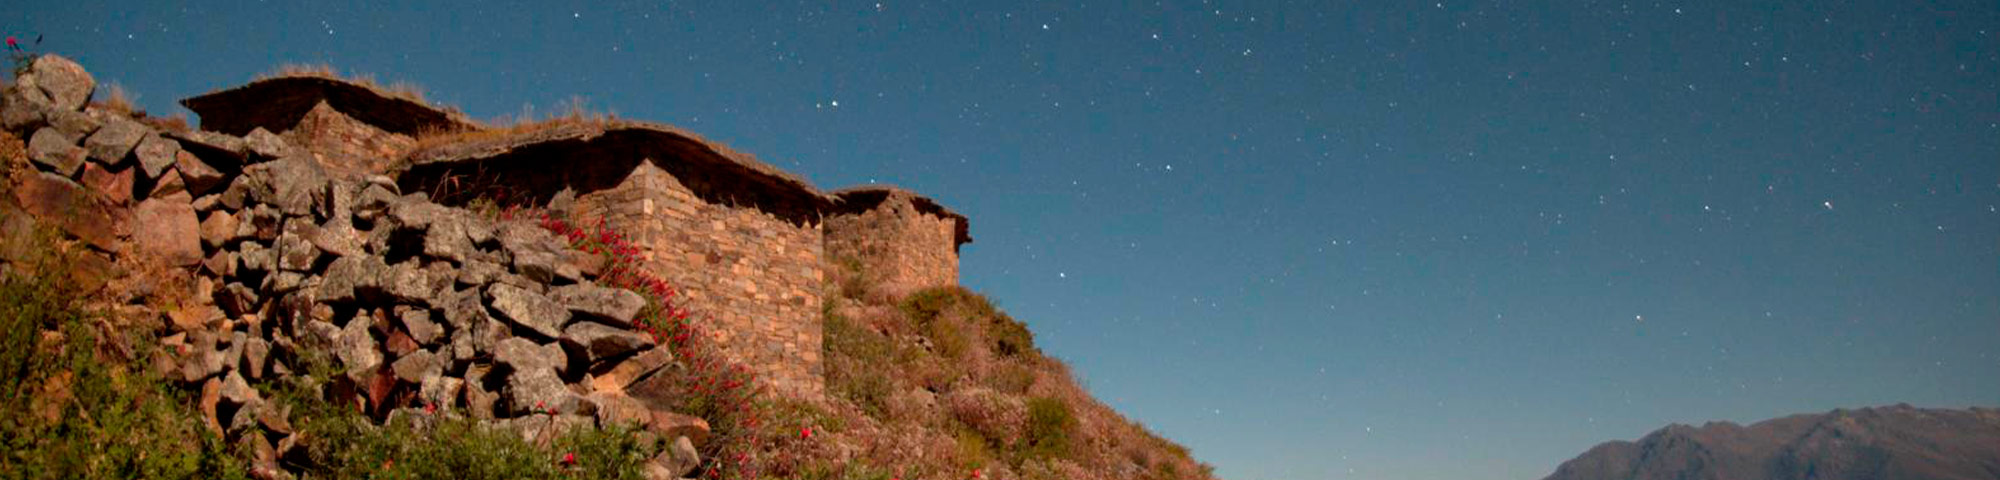 Rúpac reconocido como uno de los mejores lugares para hacer astroturismo